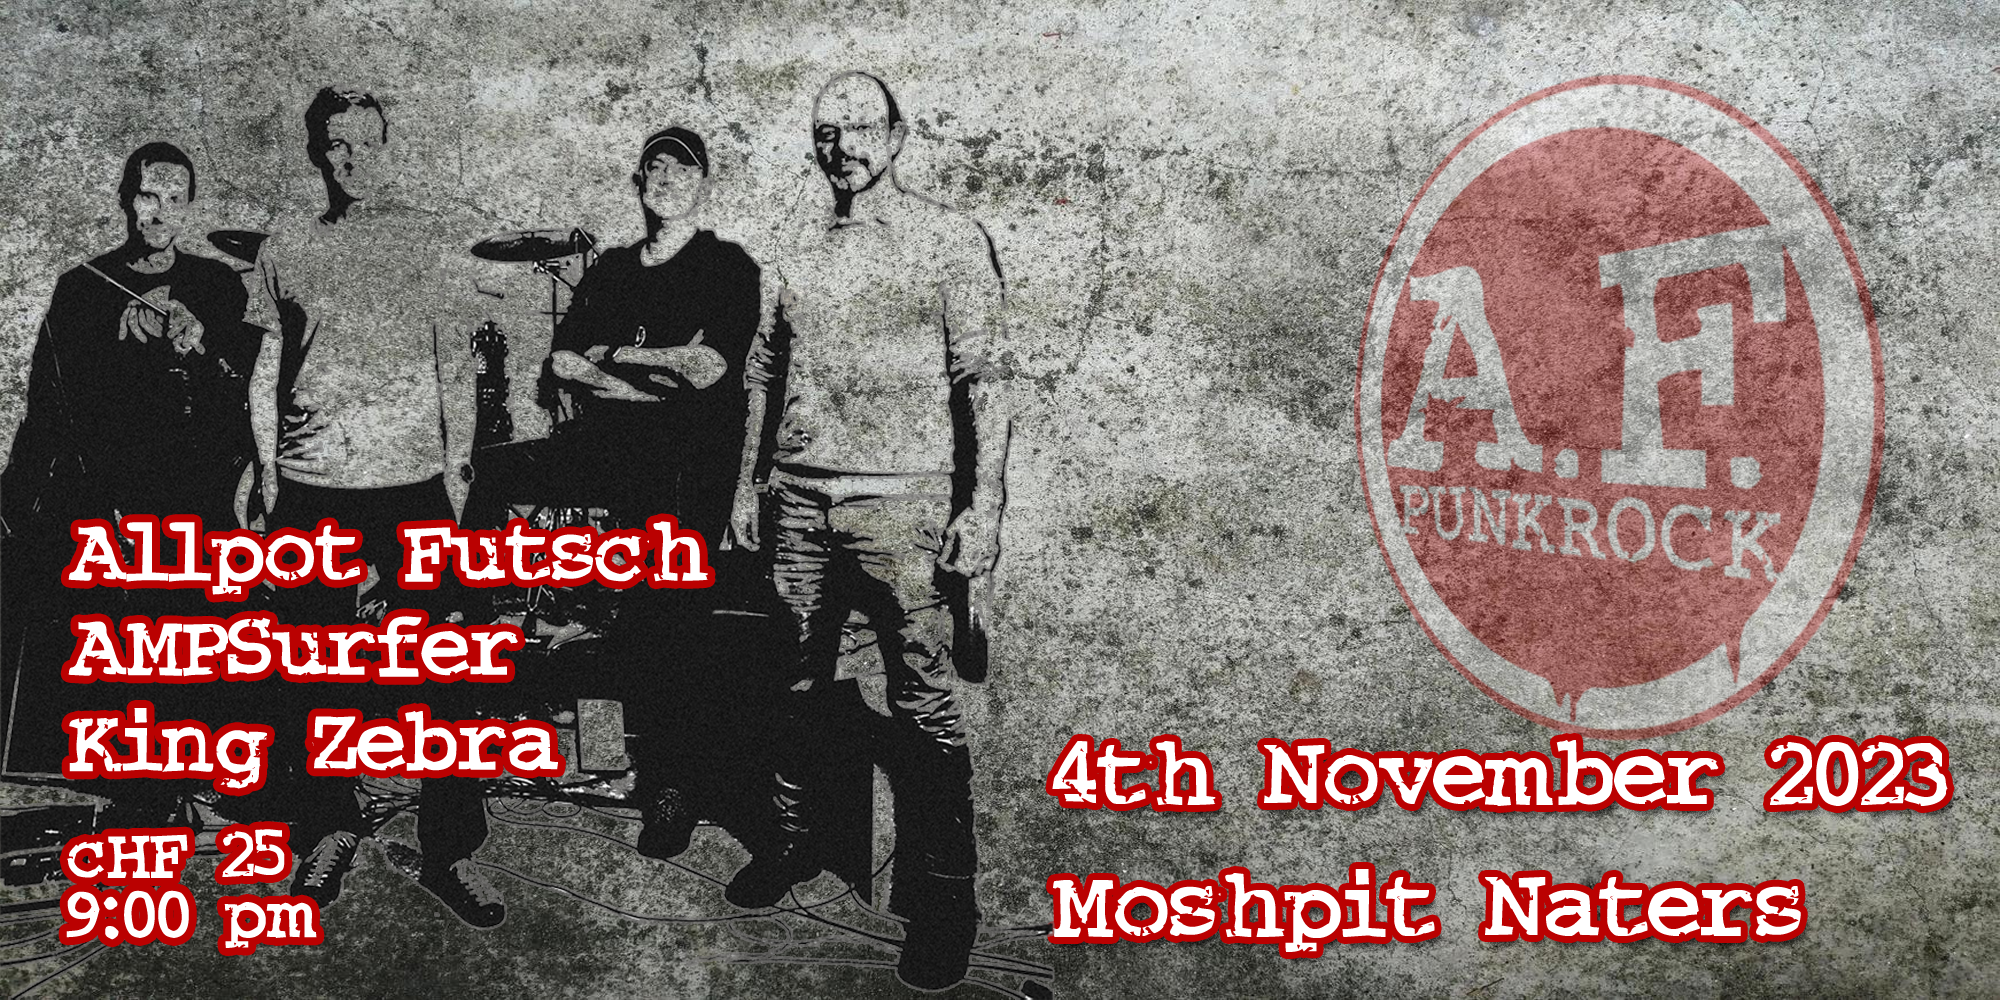 Allpot Futsch live @ Moshpit 4. November 2023